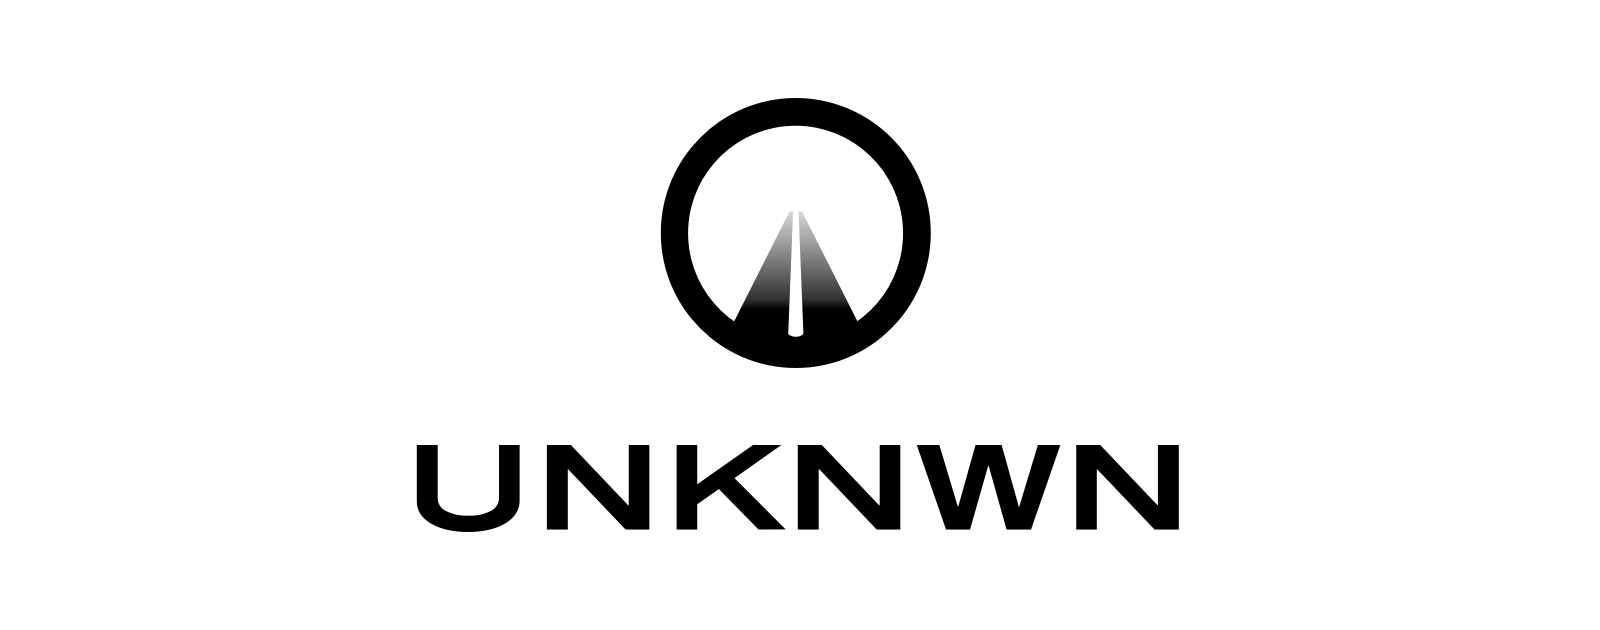 www.unknwn.com